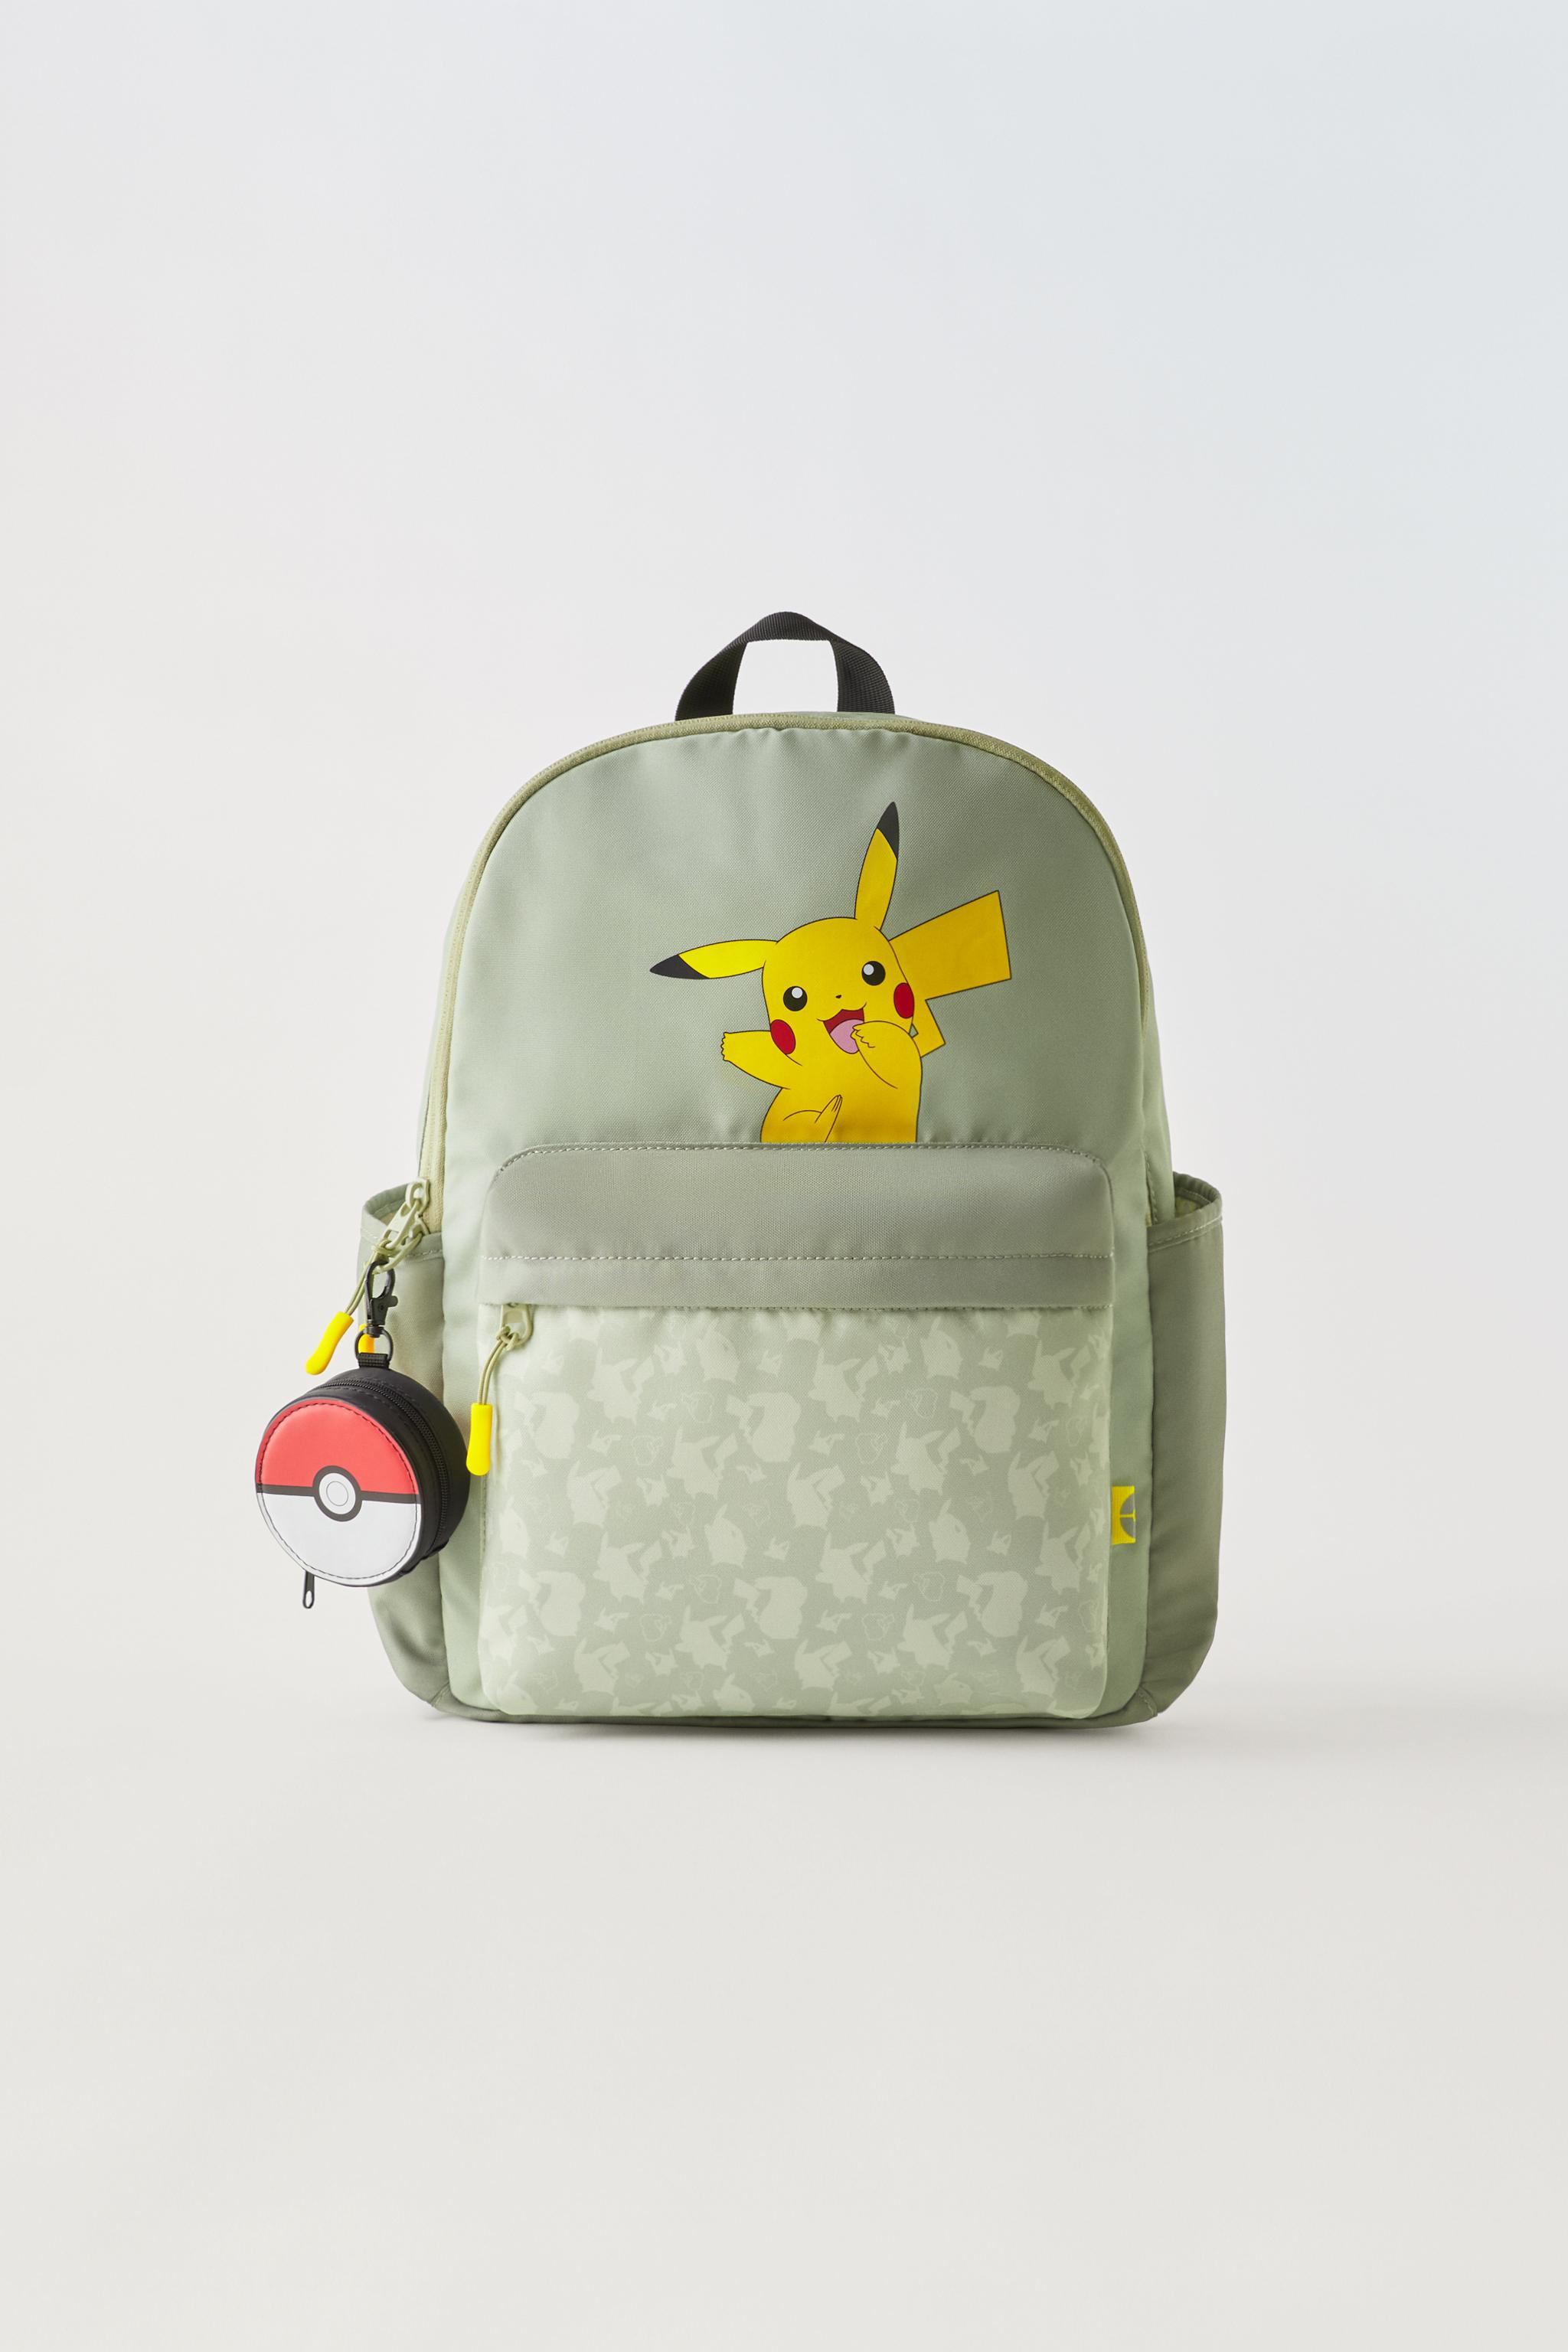 Mochila Pokémon Pikachu para jóvenes de Back School, color amarillo